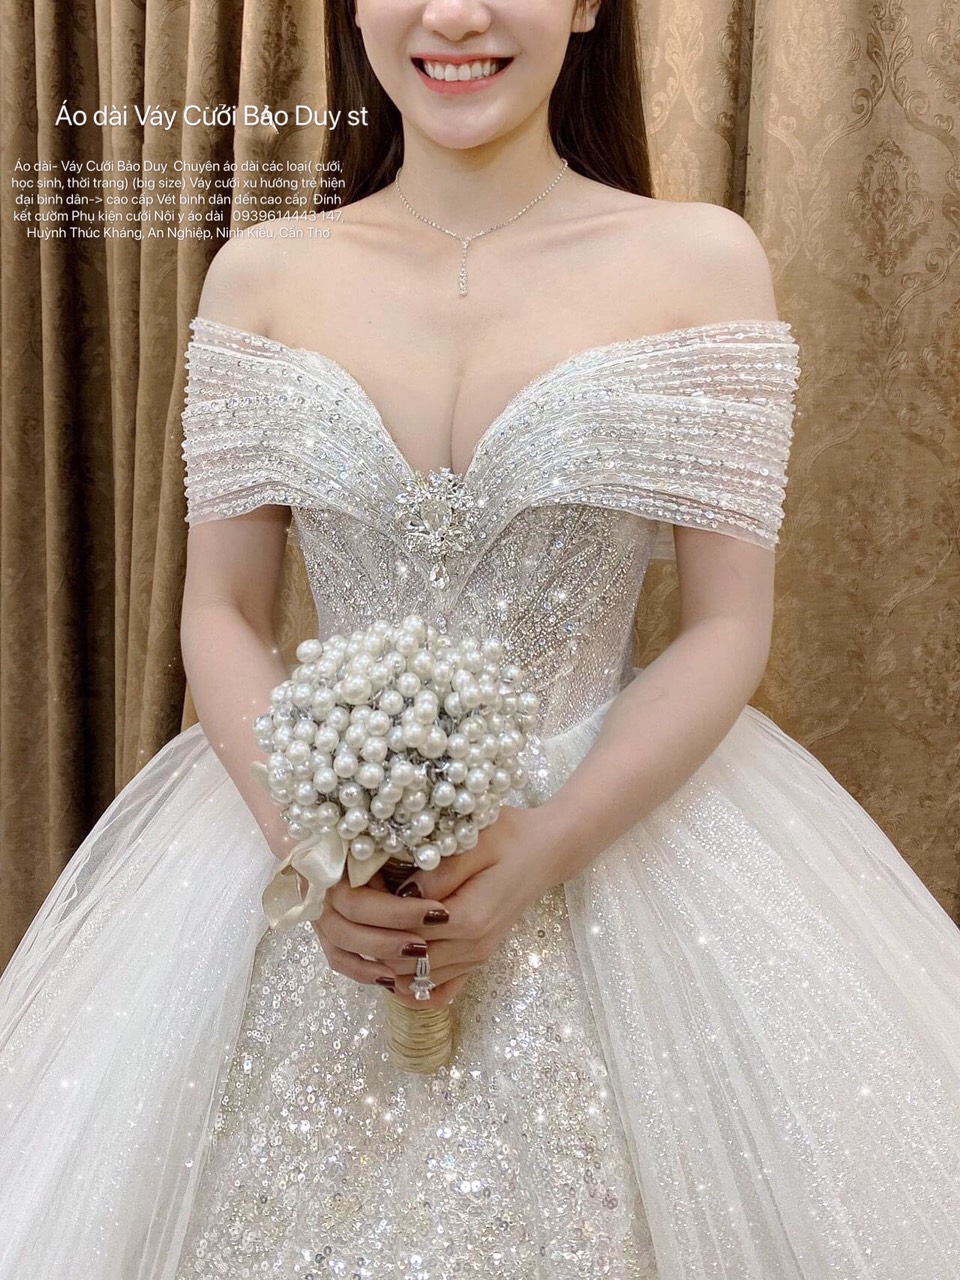 Nhà thiết kế Linh Nga mở tiệm váy cưới với 100 triệu đồng  VnExpress Giải  trí